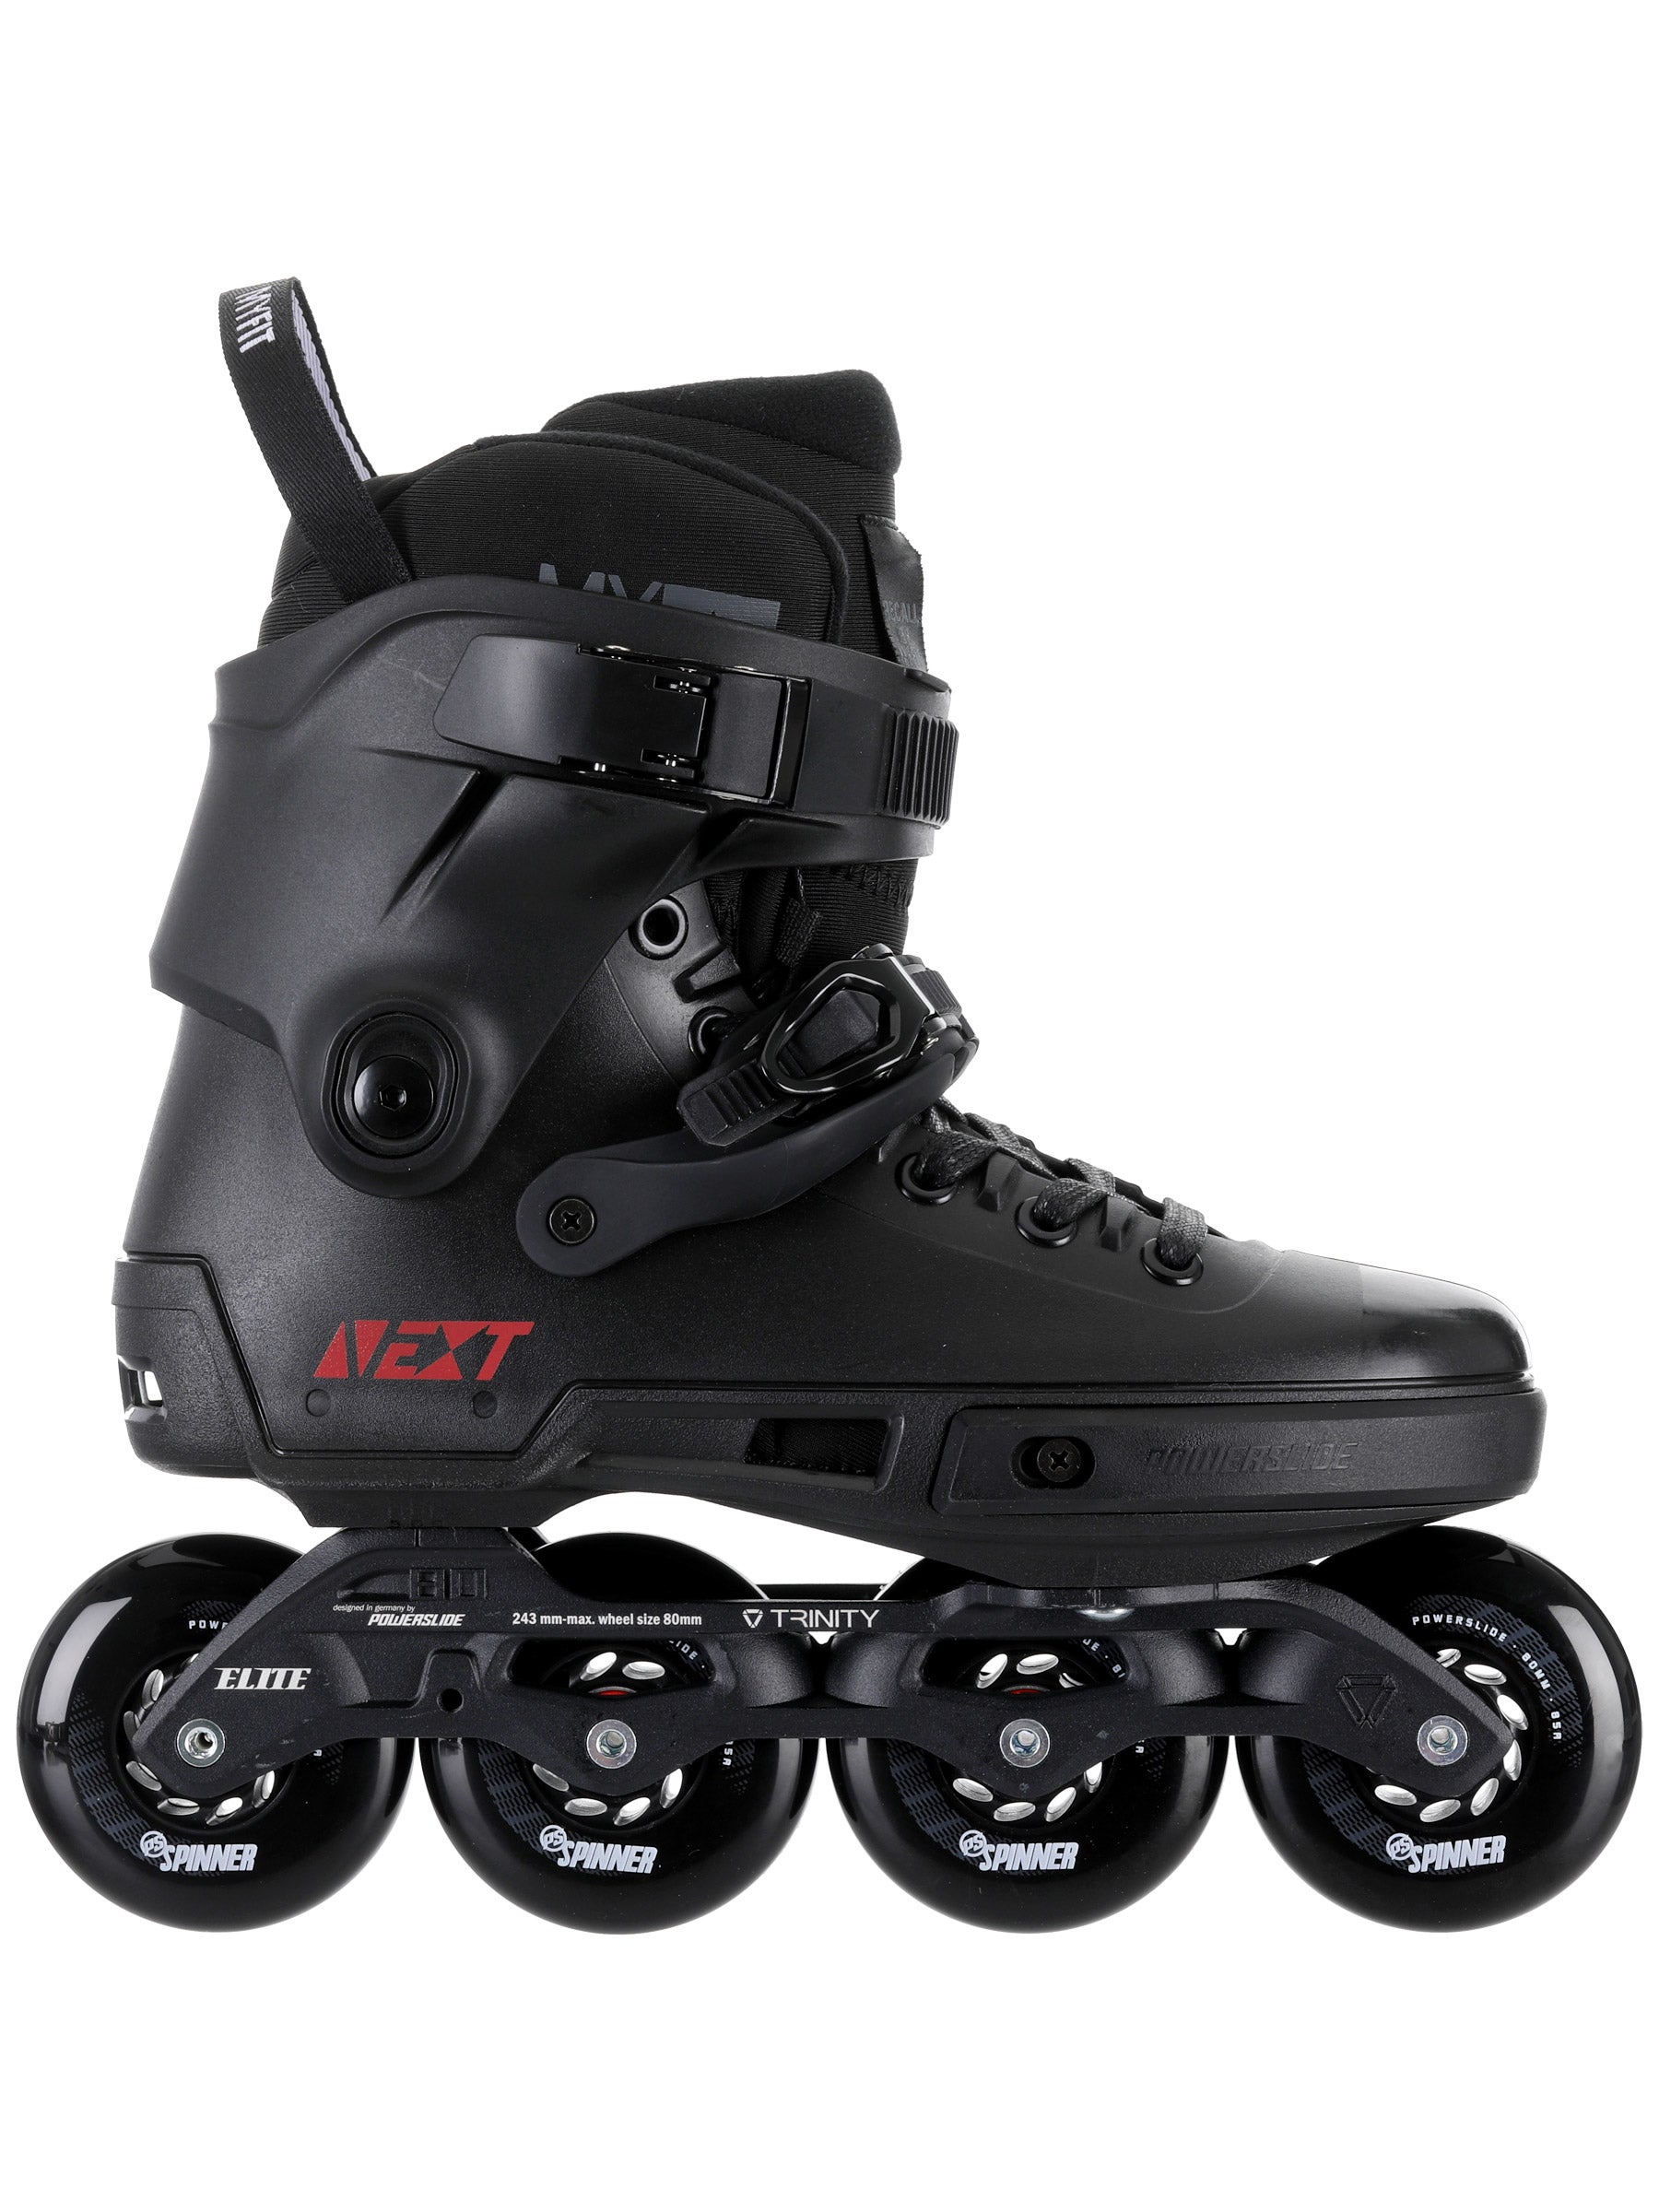 Powerslide Core Triple X 2 Boots Speed Skate Schuhe 